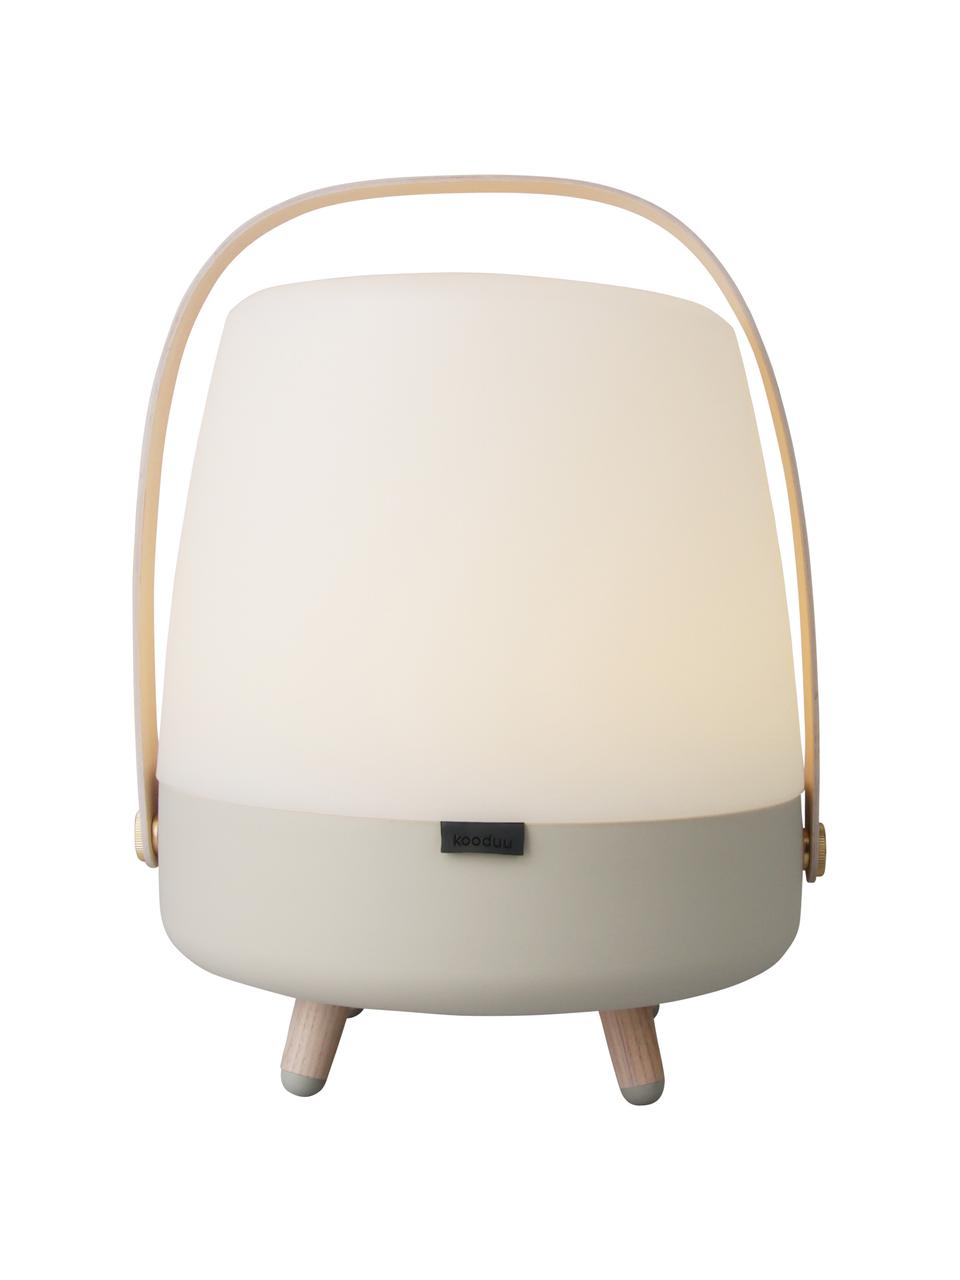 Mobile LED-Außentischleuchte Lite-up Play mit Bluetooth-Lautsprecher, Lampenschirm: Kunststoff, Griff: Holz, Füße: Silikongummi, Holz, Sandfarben, Transparent, Hellbraun, Ø 29 x H 40 cm